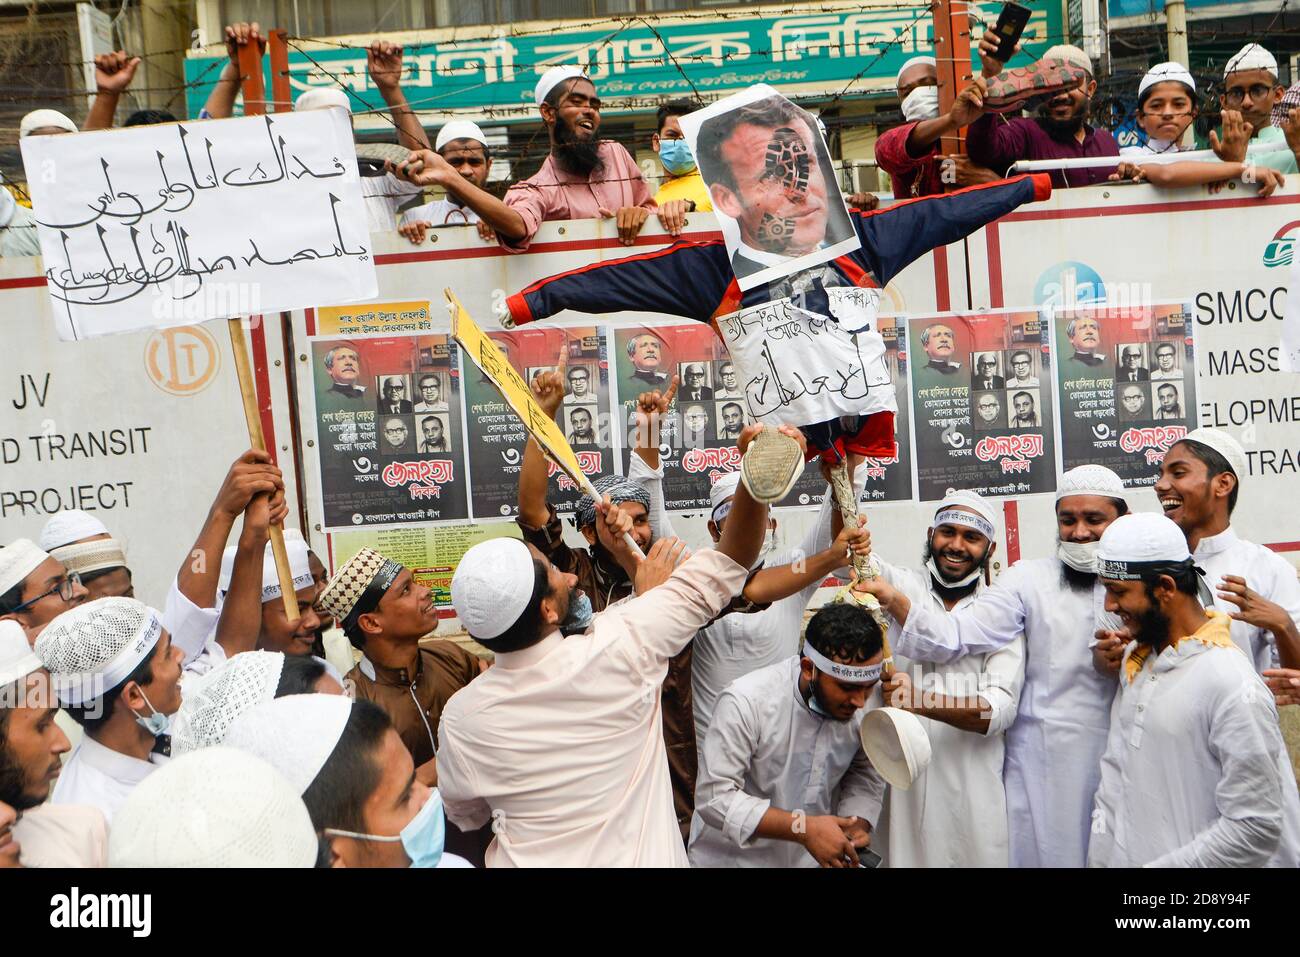 Demonstranten einer islamistischen politischen Partei halten ein Abbild des französischen Präsidenten Emmanuel Macron, während andere ihre Plakate benutzen, um ihn während des Protests in Dhaka zu treffen.Muslime protestieren zum Boykott französischer Produkte und verurteilen Präsident Emmanuel Macron für seine Kommentare über die Karikaturen des Propheten Mohammed. Stockfoto